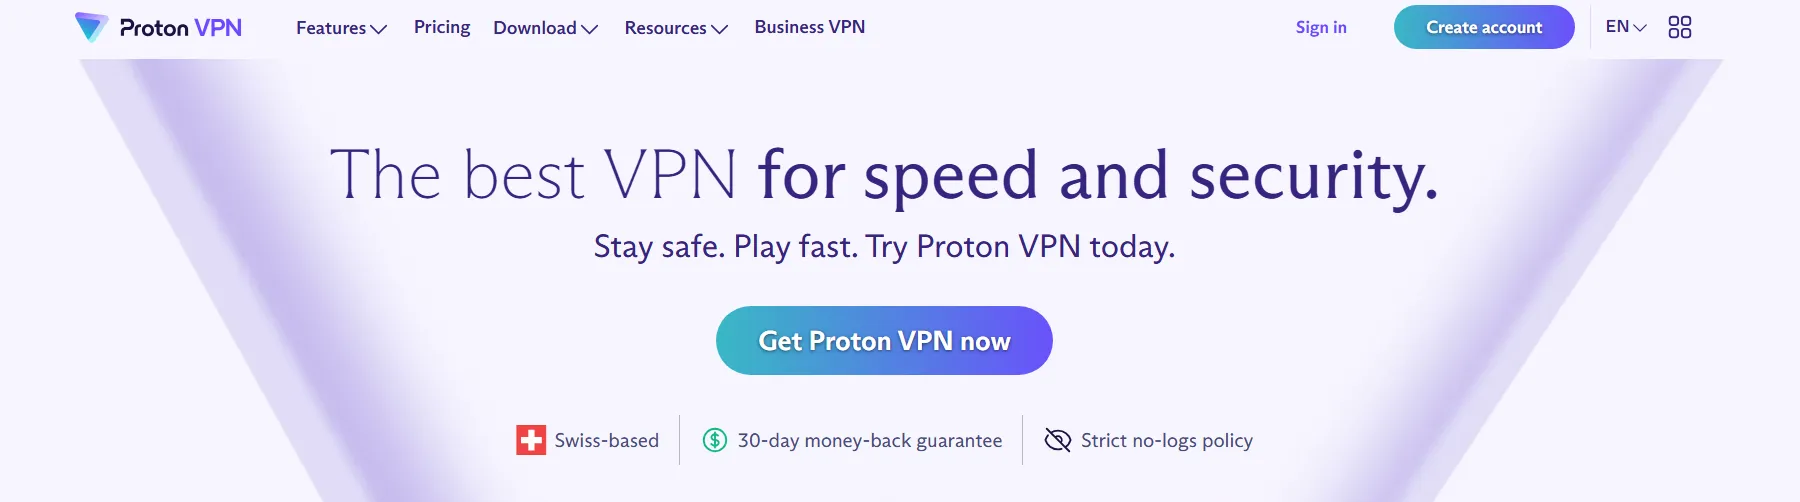 ProtonVPN Overview